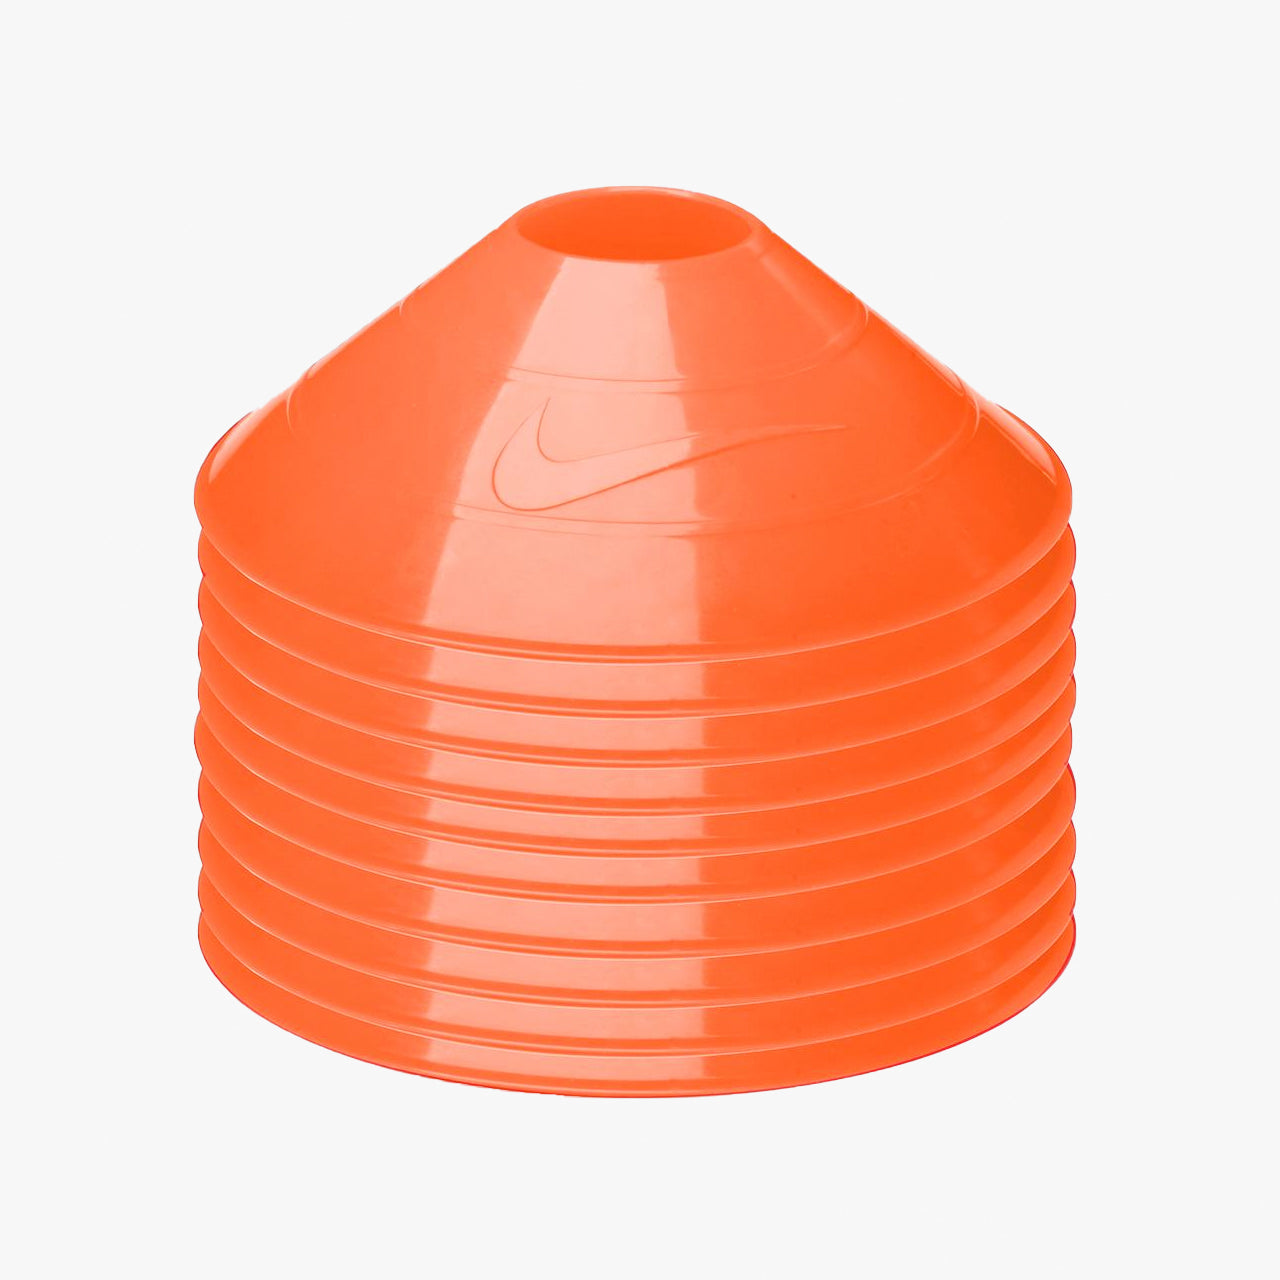 Nike Training Cones Orange 10 Pack